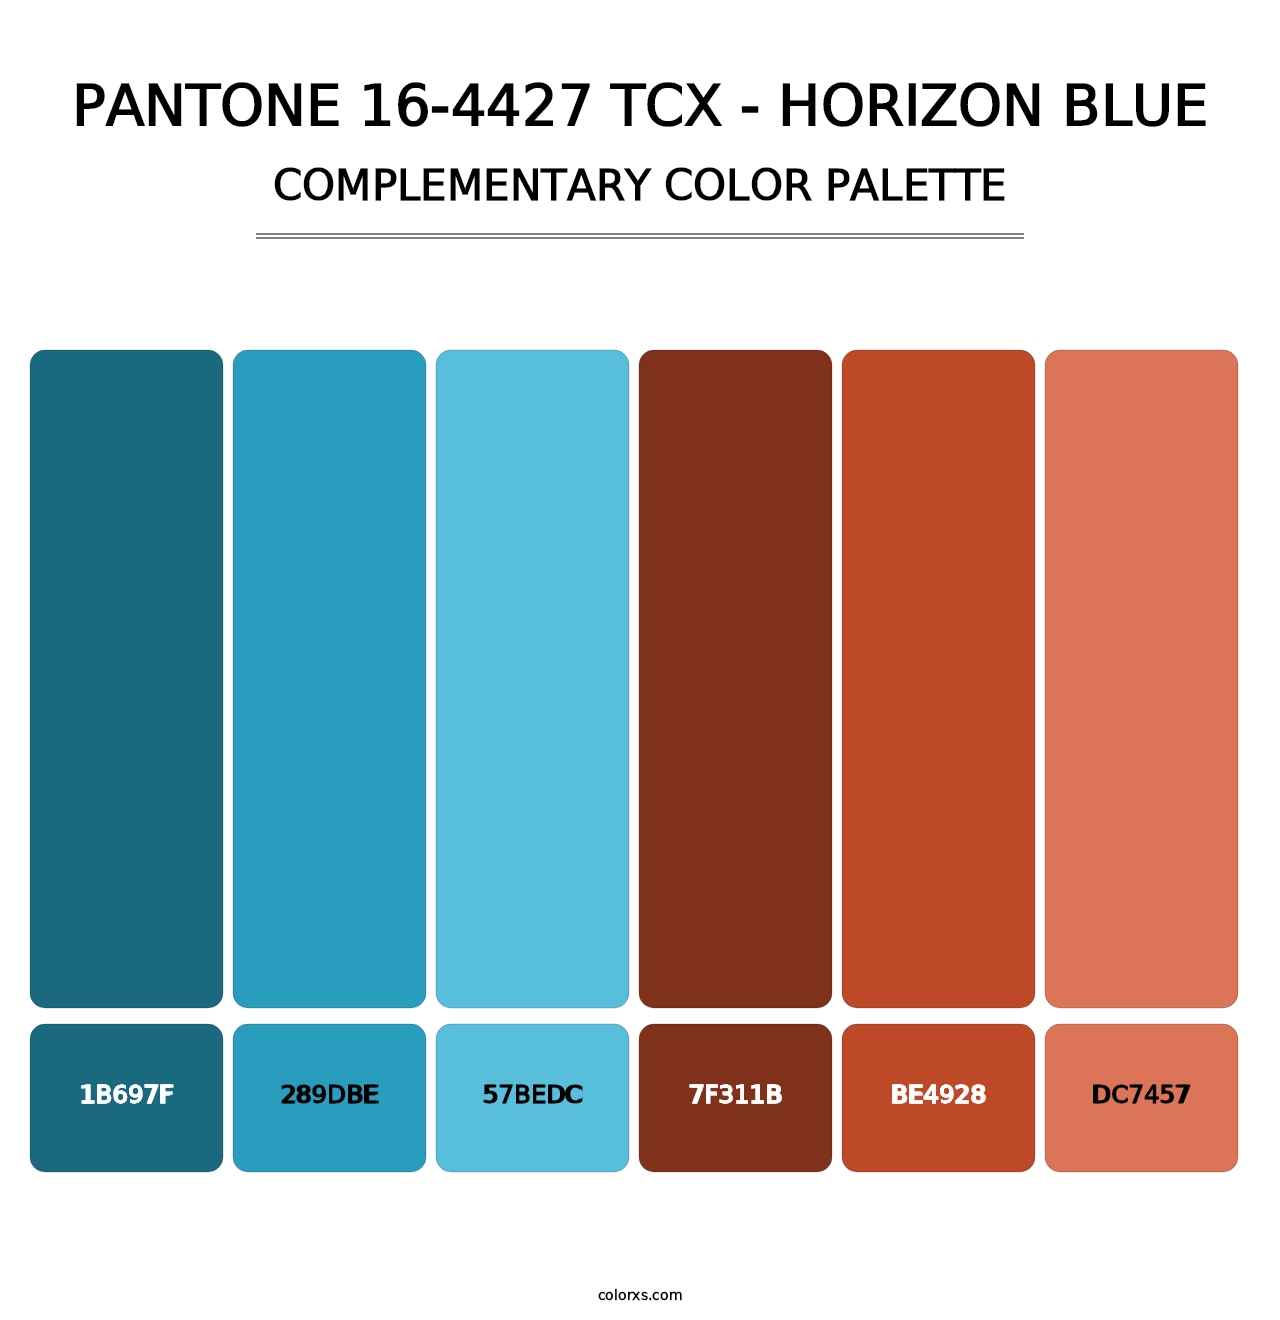 PANTONE 16-4427 TCX - Horizon Blue - Complementary Color Palette